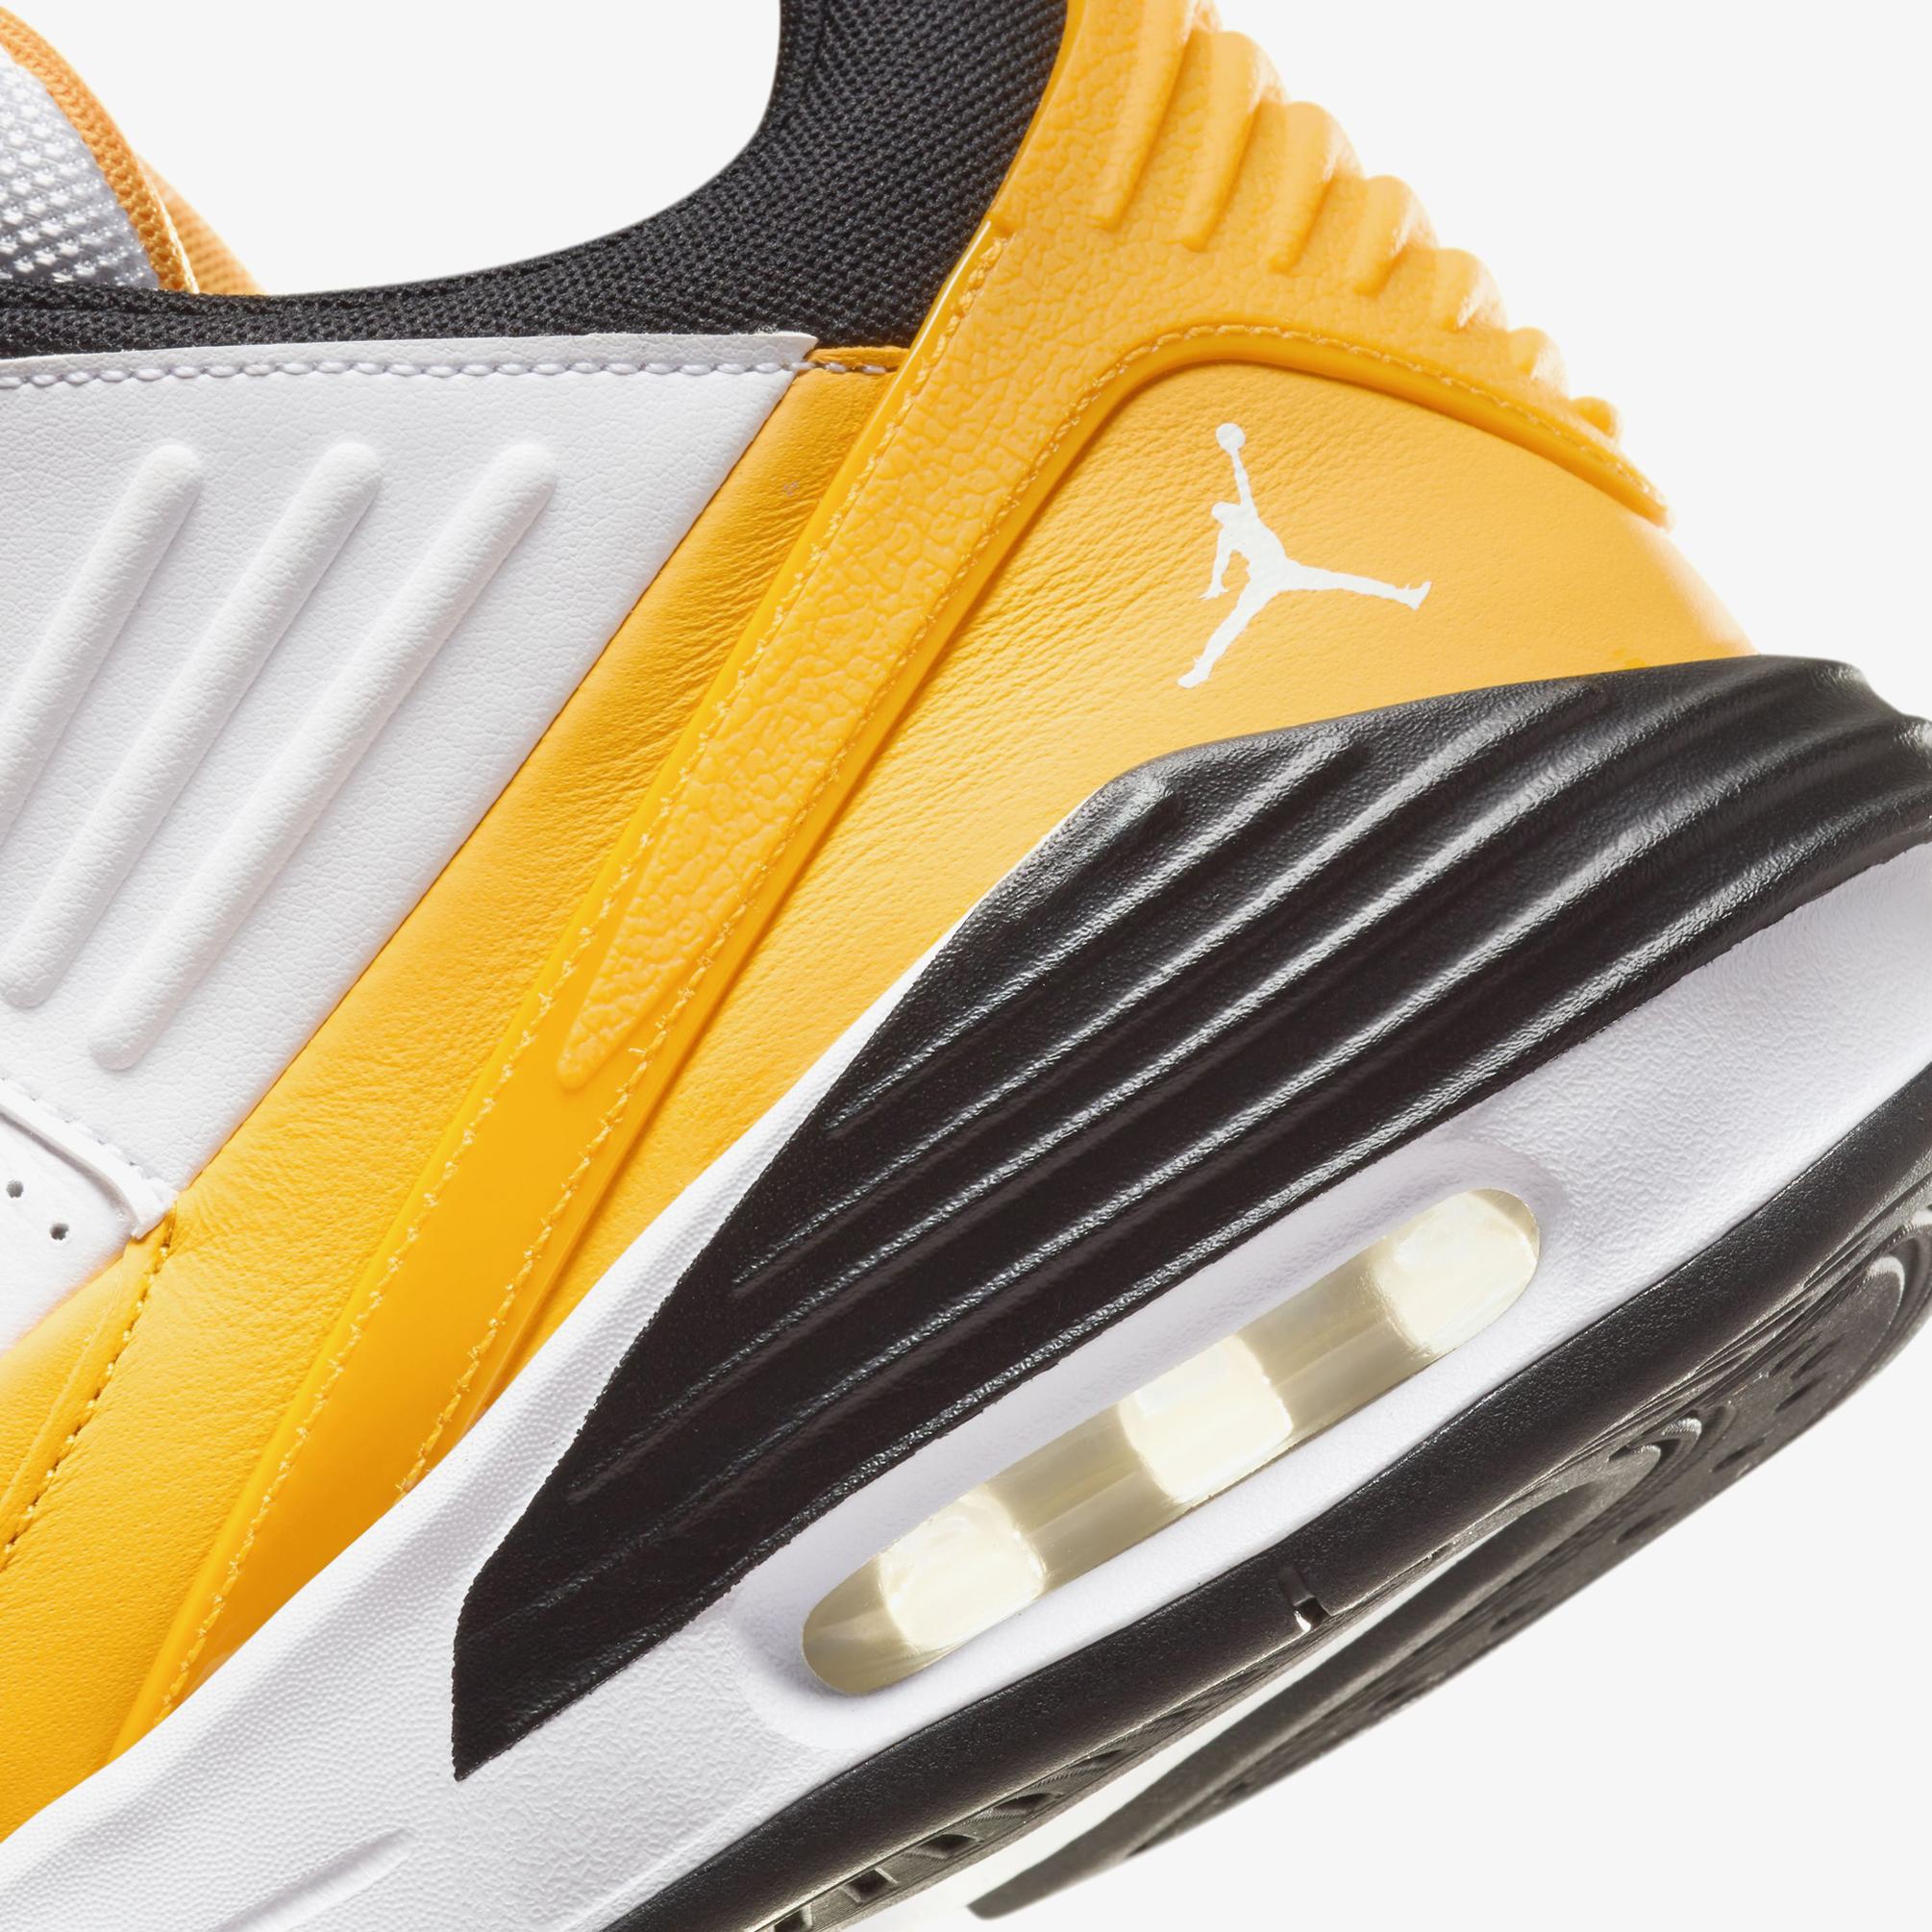  Jordan Max Aura 5 Erkek Sarı/Altın Spor Ayakkabı